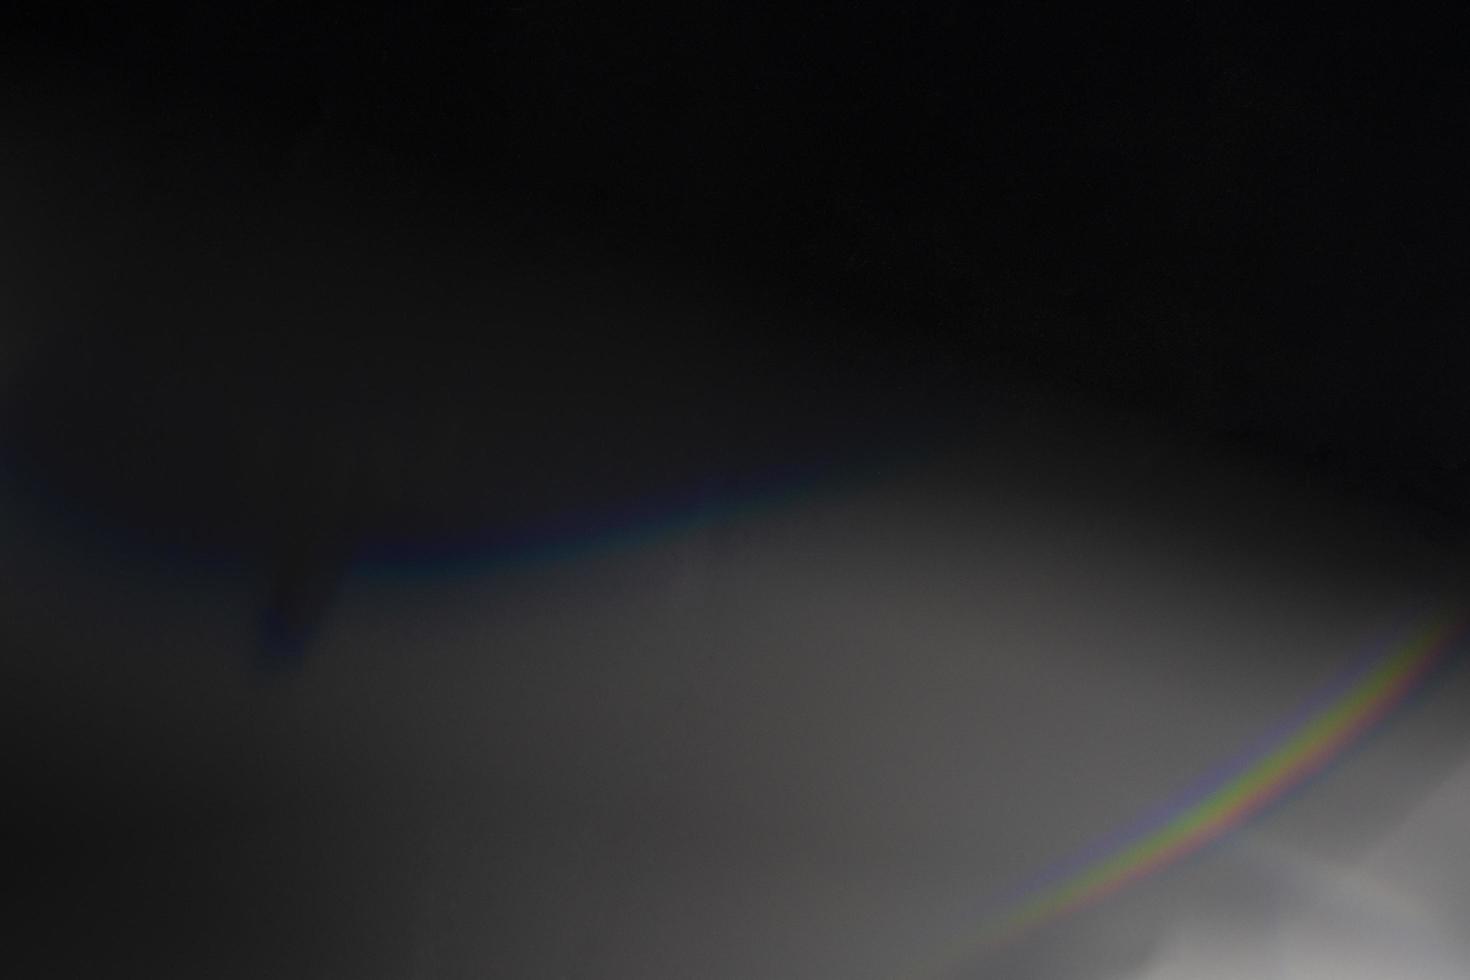 efeito de vazamento de luz de cristal para sobreposição de fotos. prisma lente flare bokeh abstrato com luzes brilhantes, coloridas e mágicas em fundo preto. foto